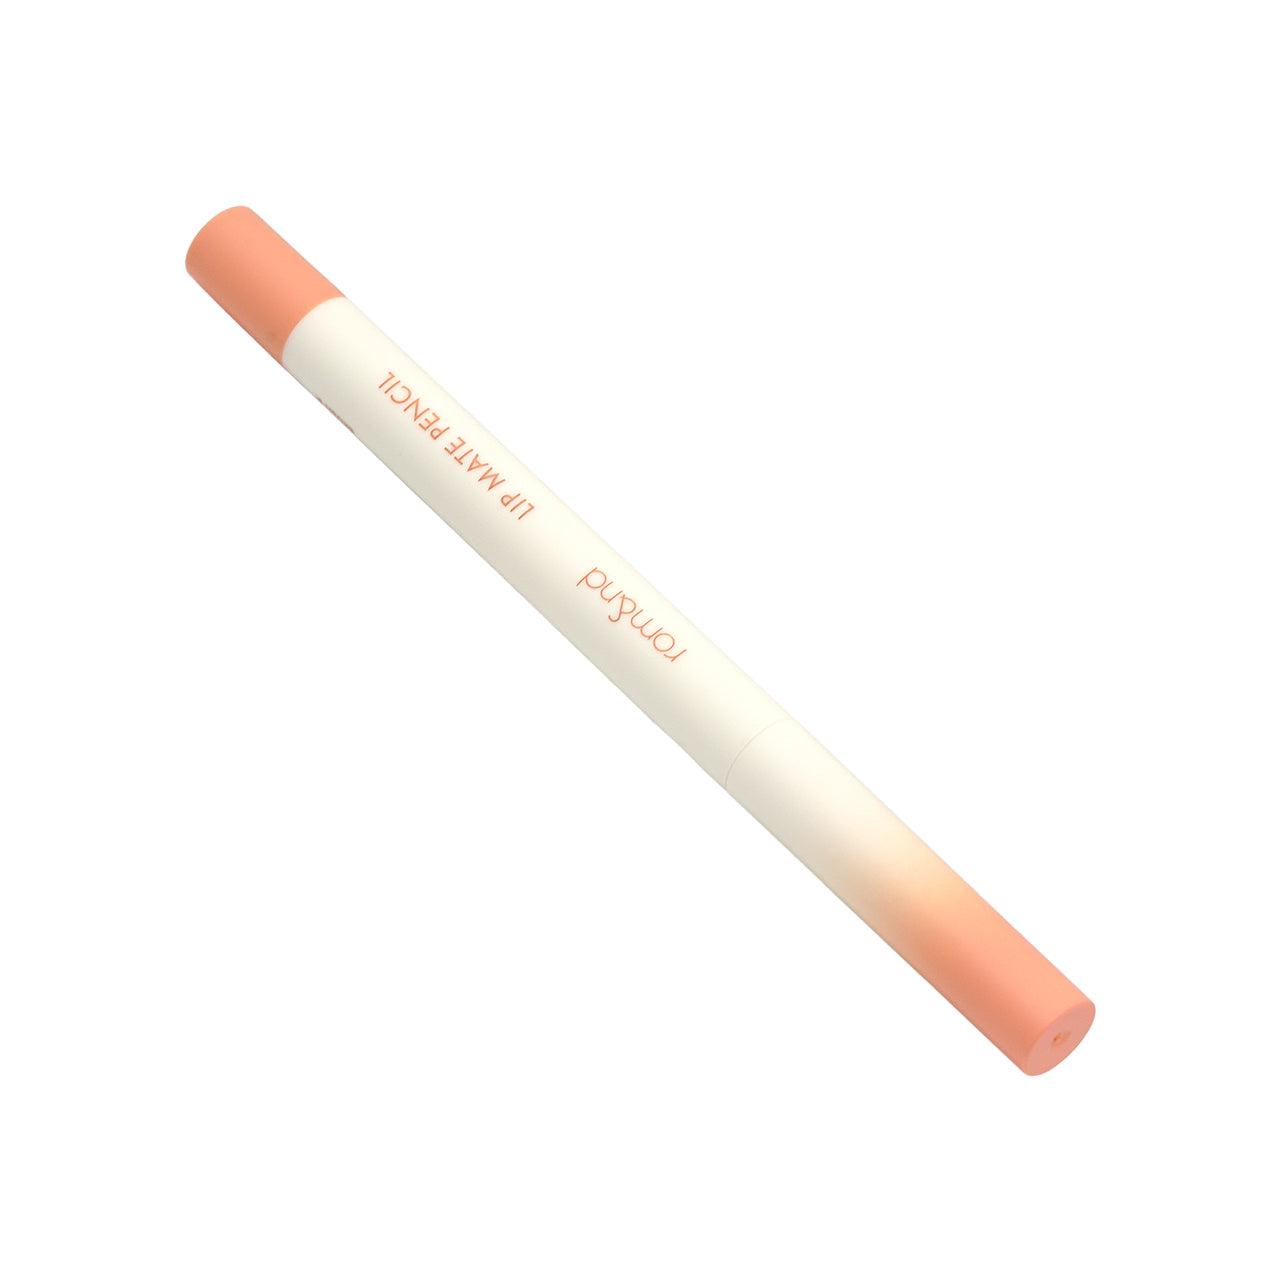 Rom&nd Lip Mate Pencil  #01 Tenderly Peach  1pc - Sasa Global eShop